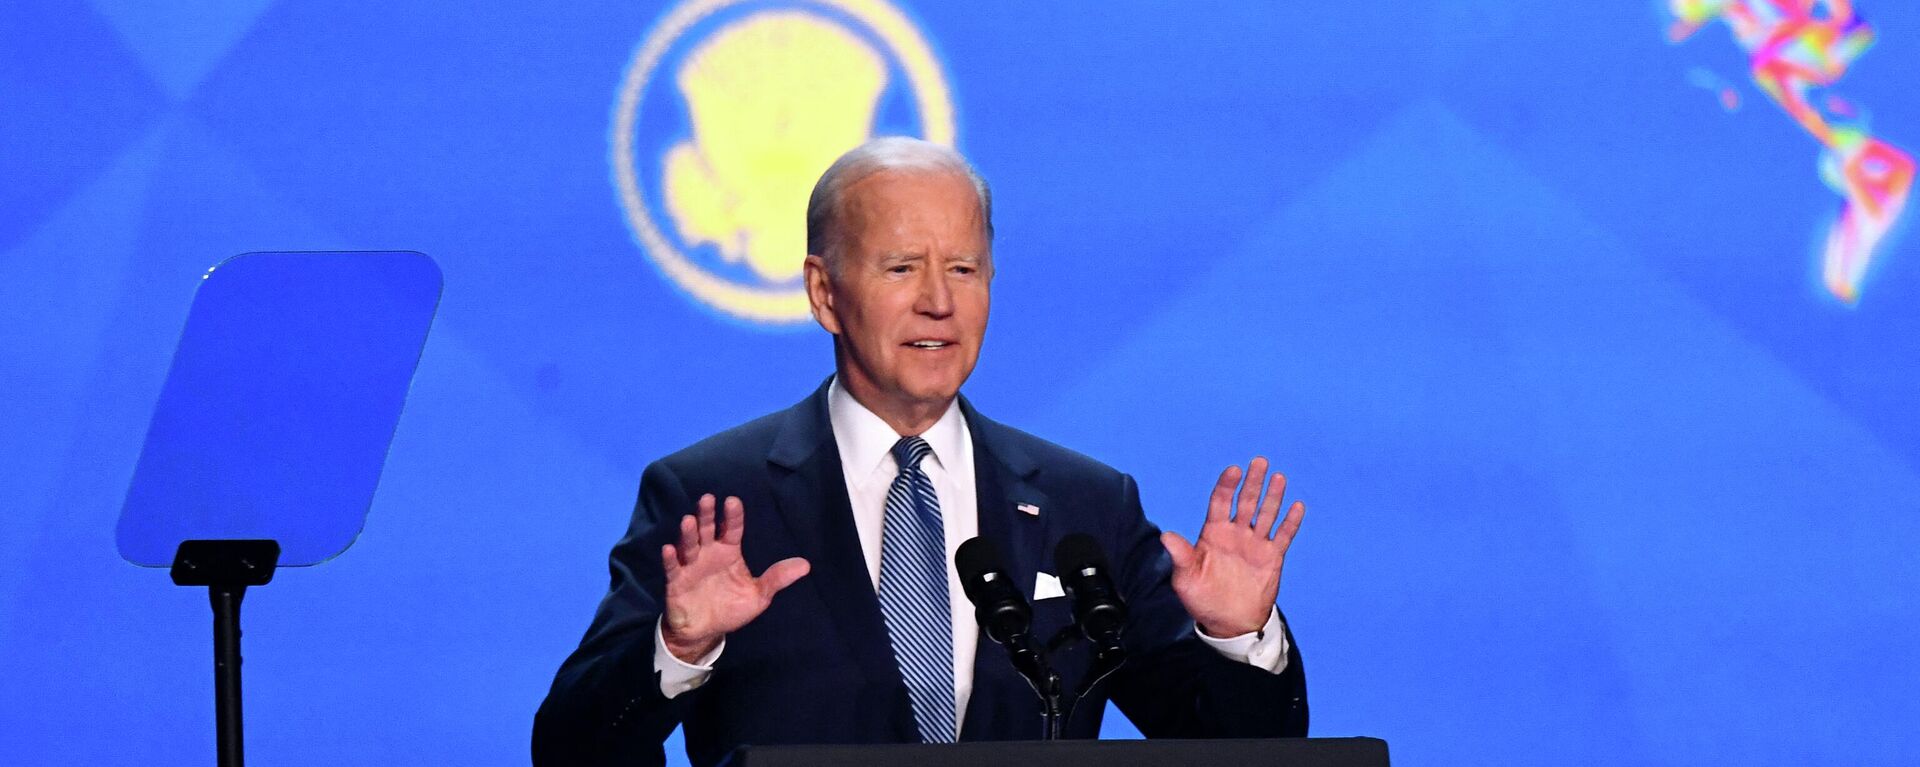 Joe Biden, presidente de EEUU, durante su discurso en la IX Cumbre de las Américas - Sputnik Mundo, 1920, 17.06.2022